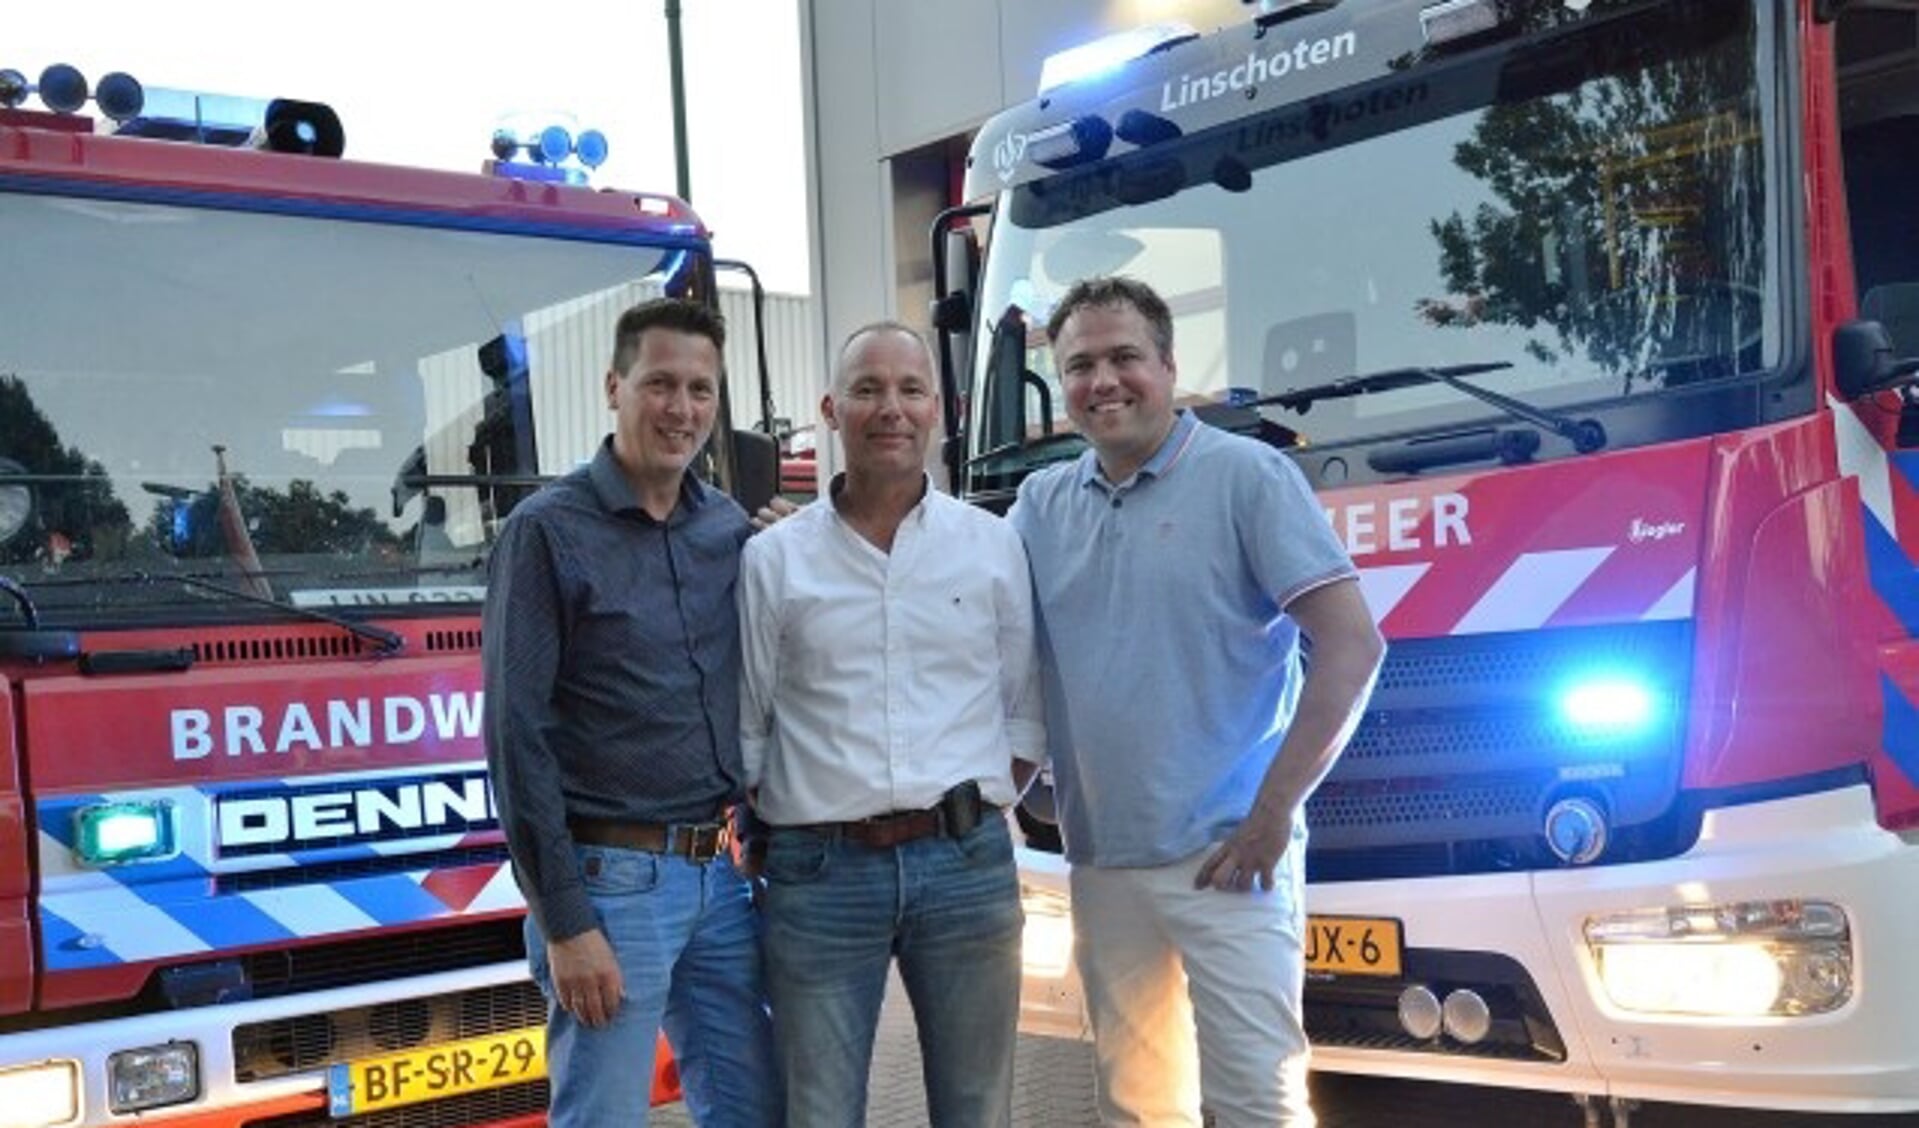 Bonne-René van Ringelestein, Wilco van Eijk en Leon Bos tussen het oude (links) en nieuwe brandweervoertuig. (Foto: Paul van den Dungen)